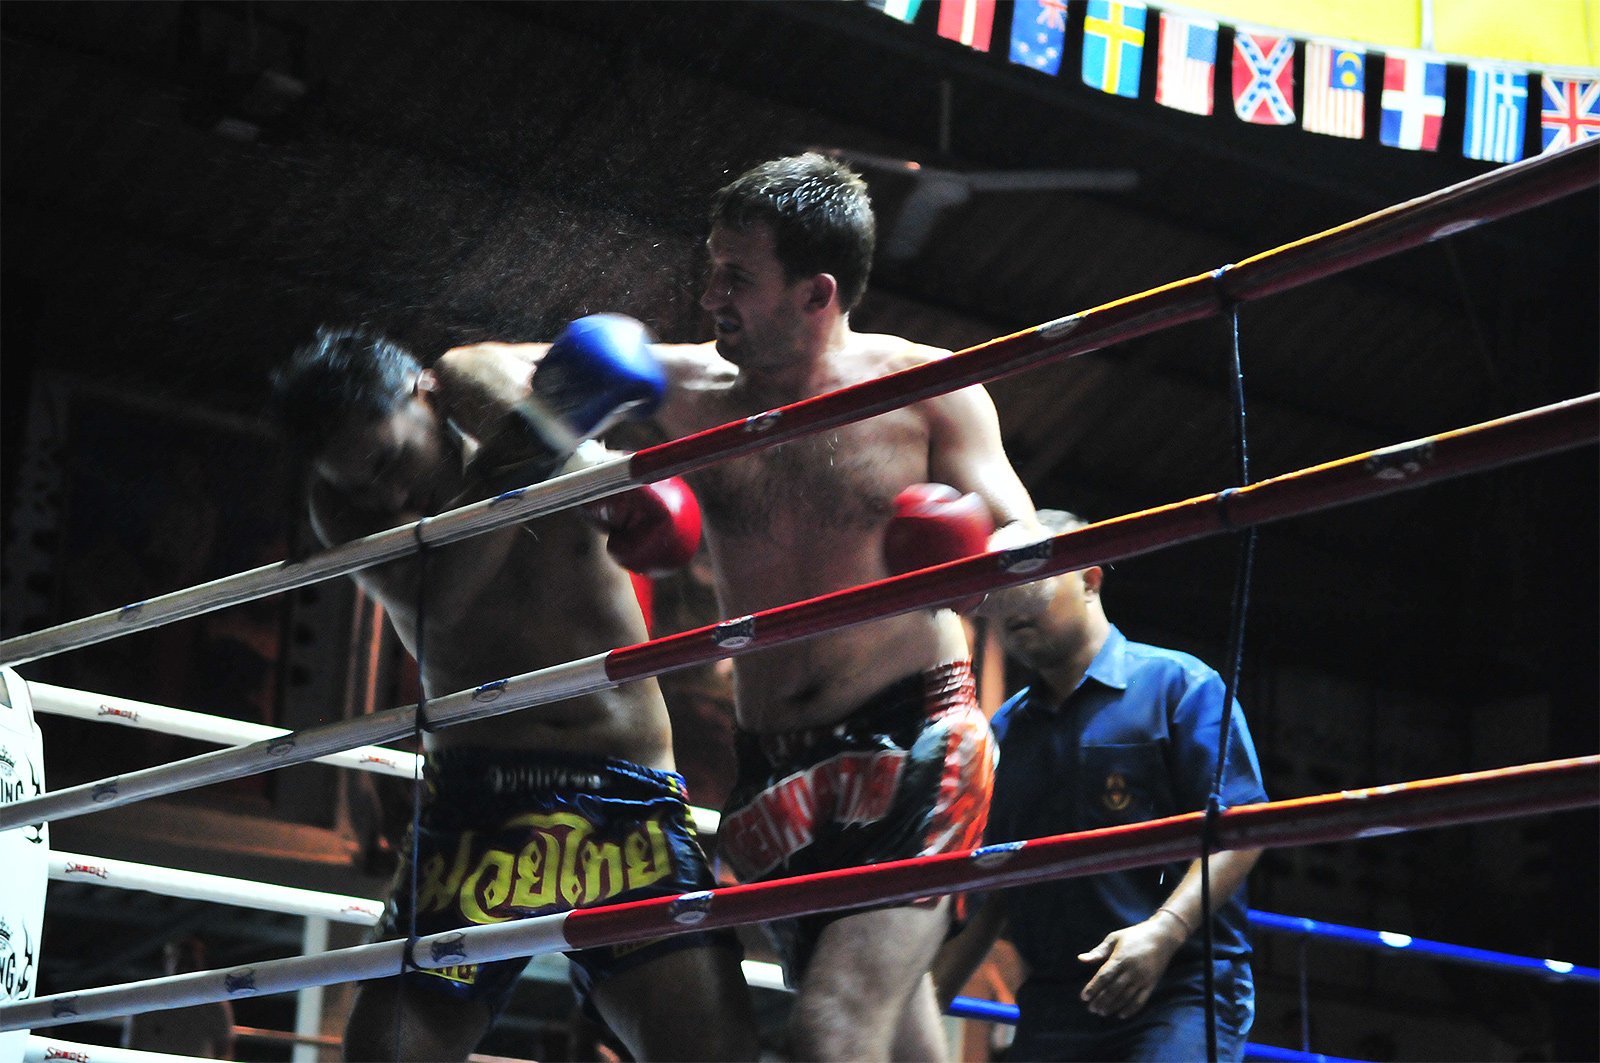 Как посмотреть тайский бокс на стадионе на Пхукете